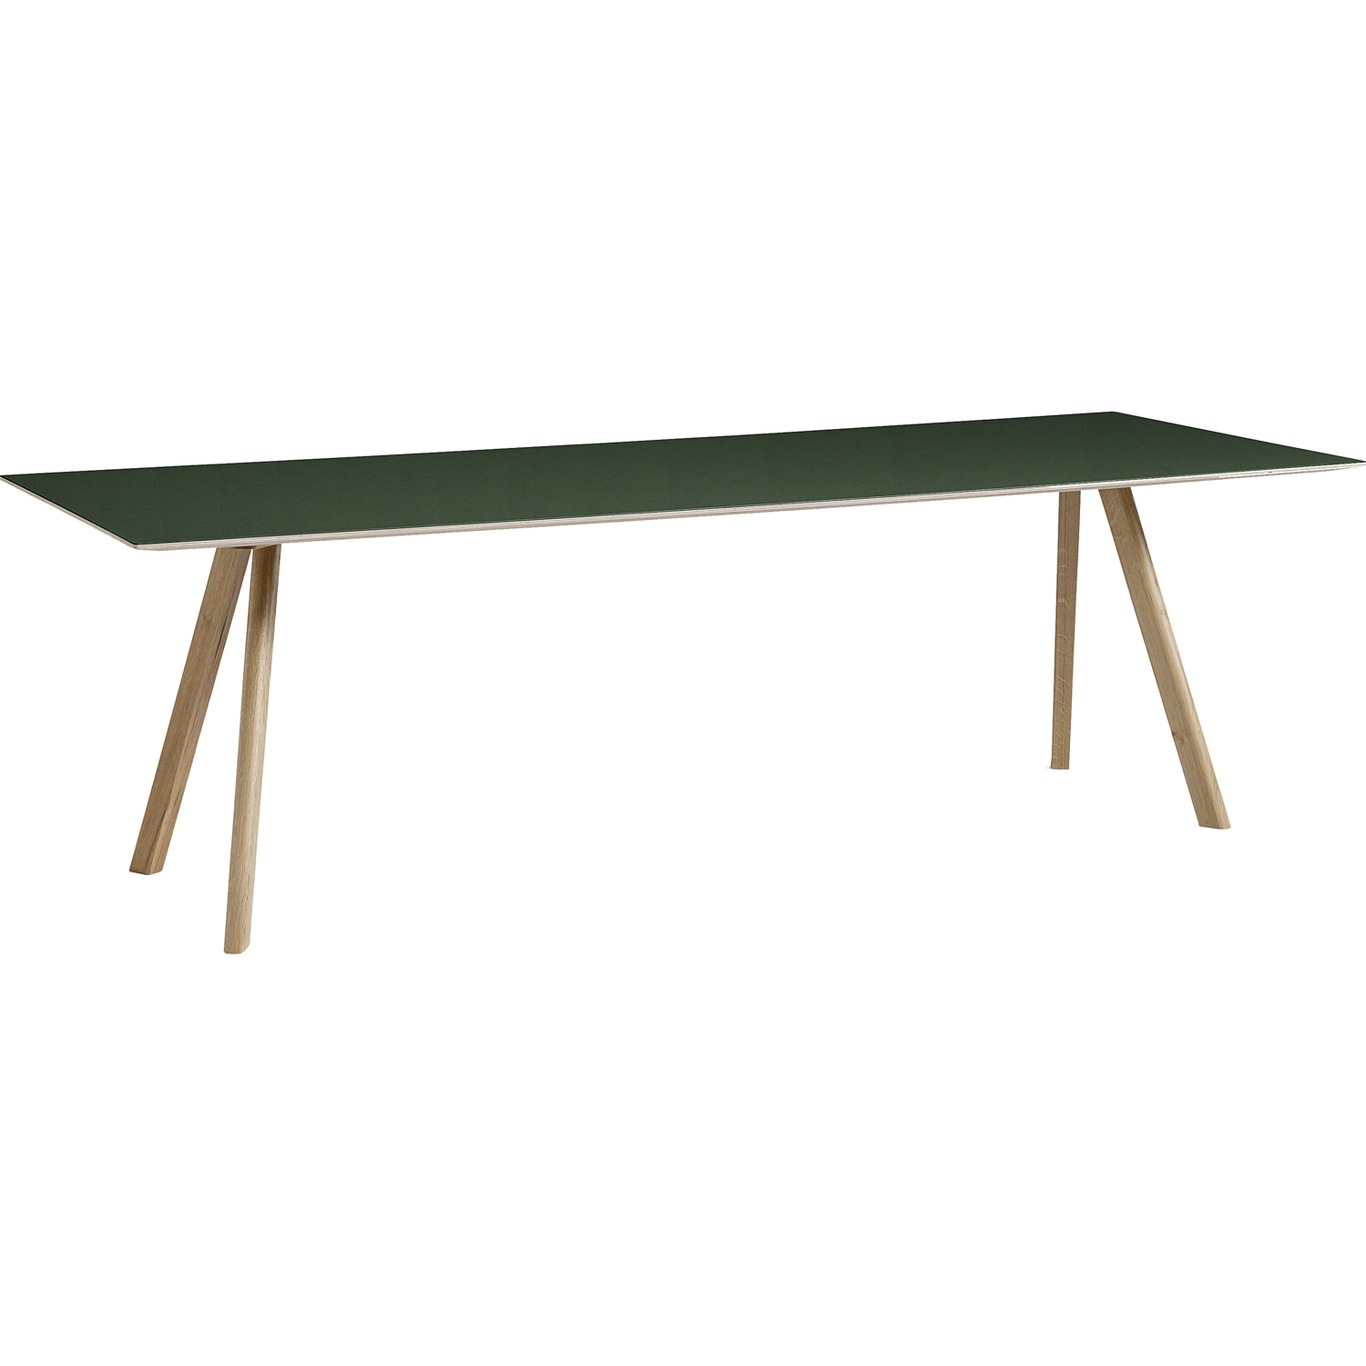 CPH30 Tisch 90x250 cm, Mit Wasserlack Behandelte Eiche/Grün Linoleum